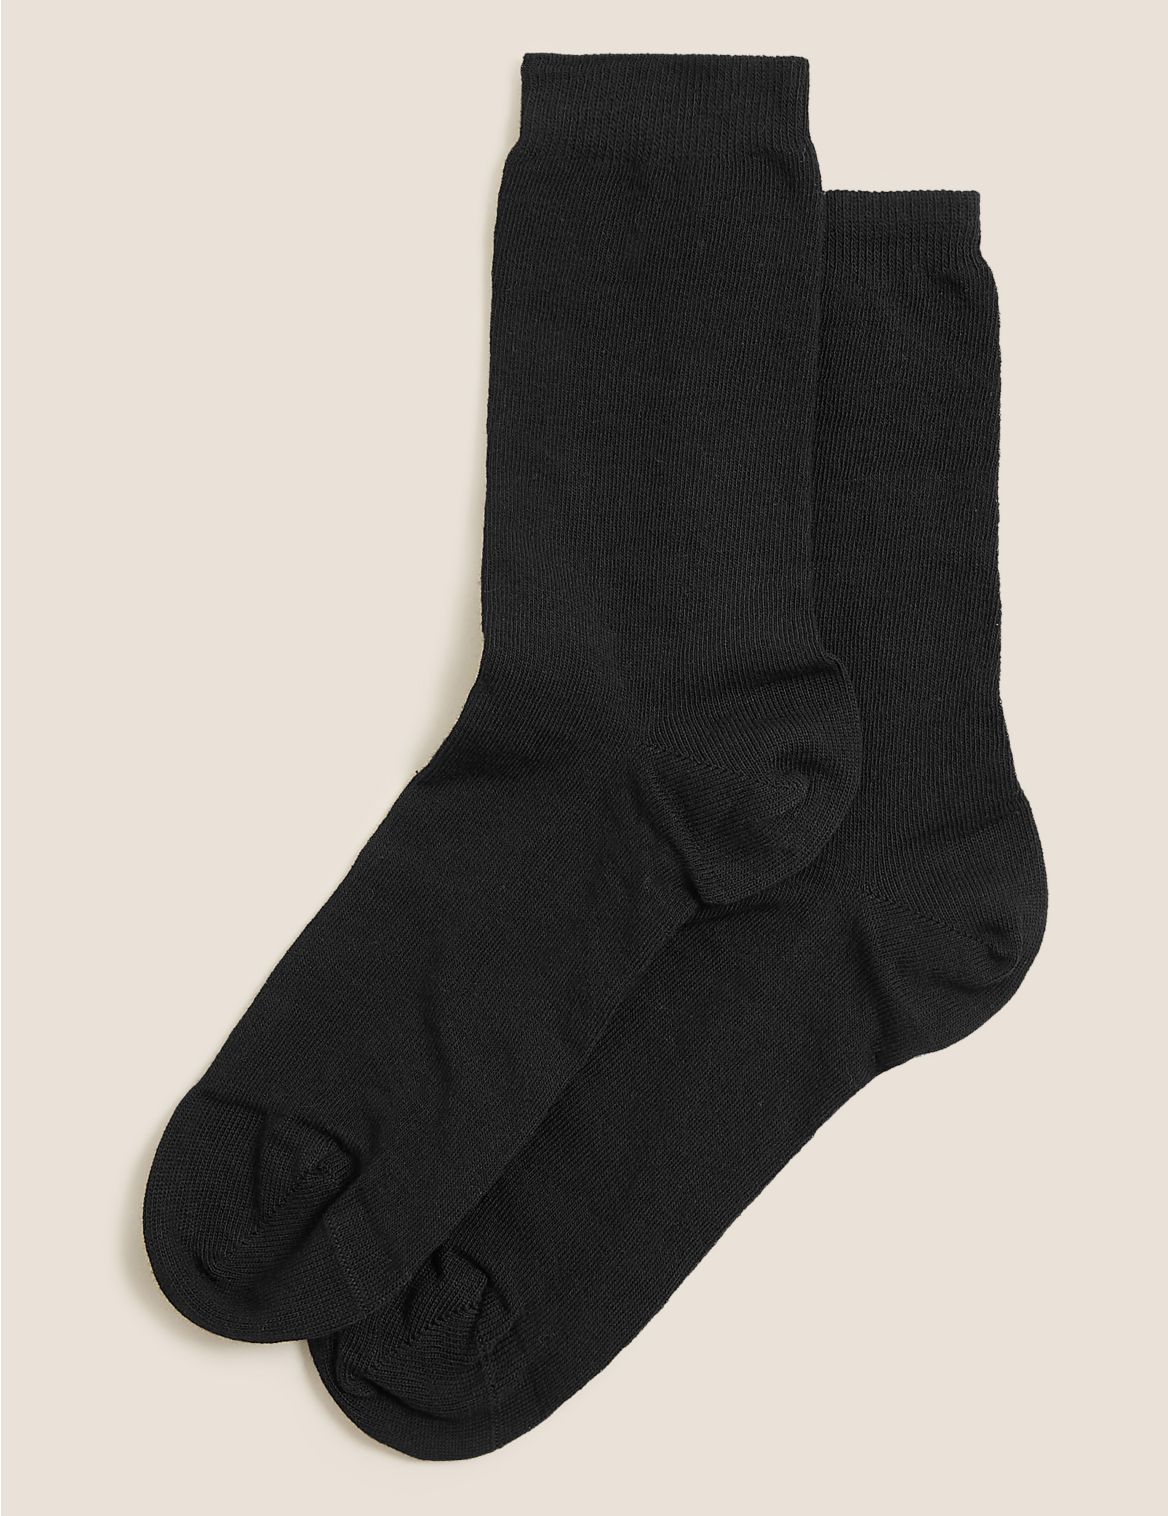 2pk Blister Resist Ankle High Socks black